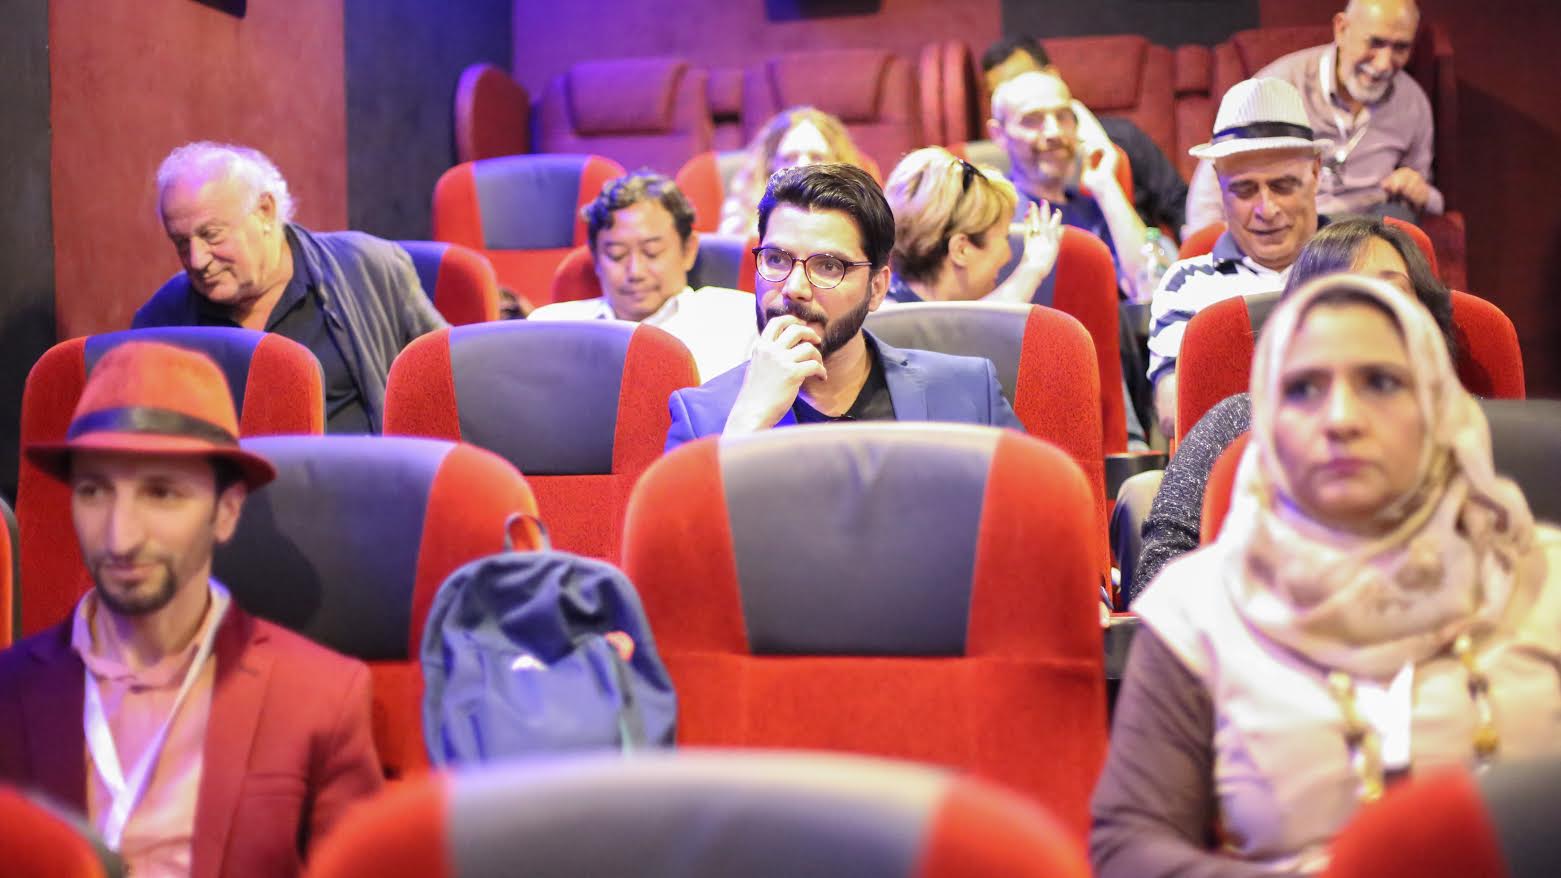 السينما العمانية تواصل فعاليات المهرجان وتحتفي بيوم الطفل